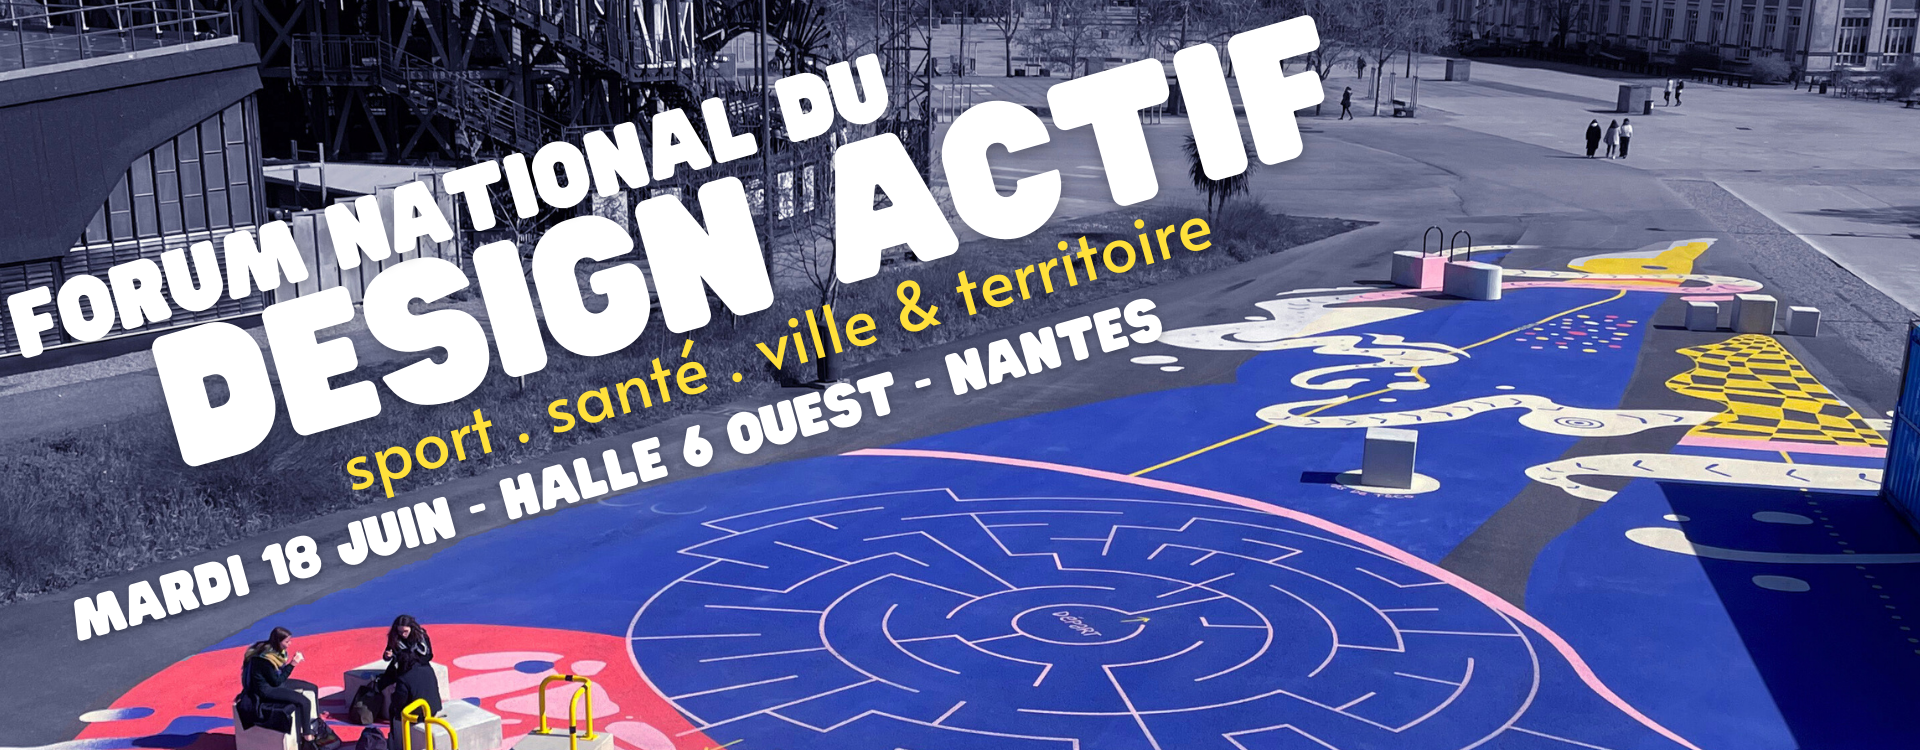 Forum National du Design Actif à Nantes